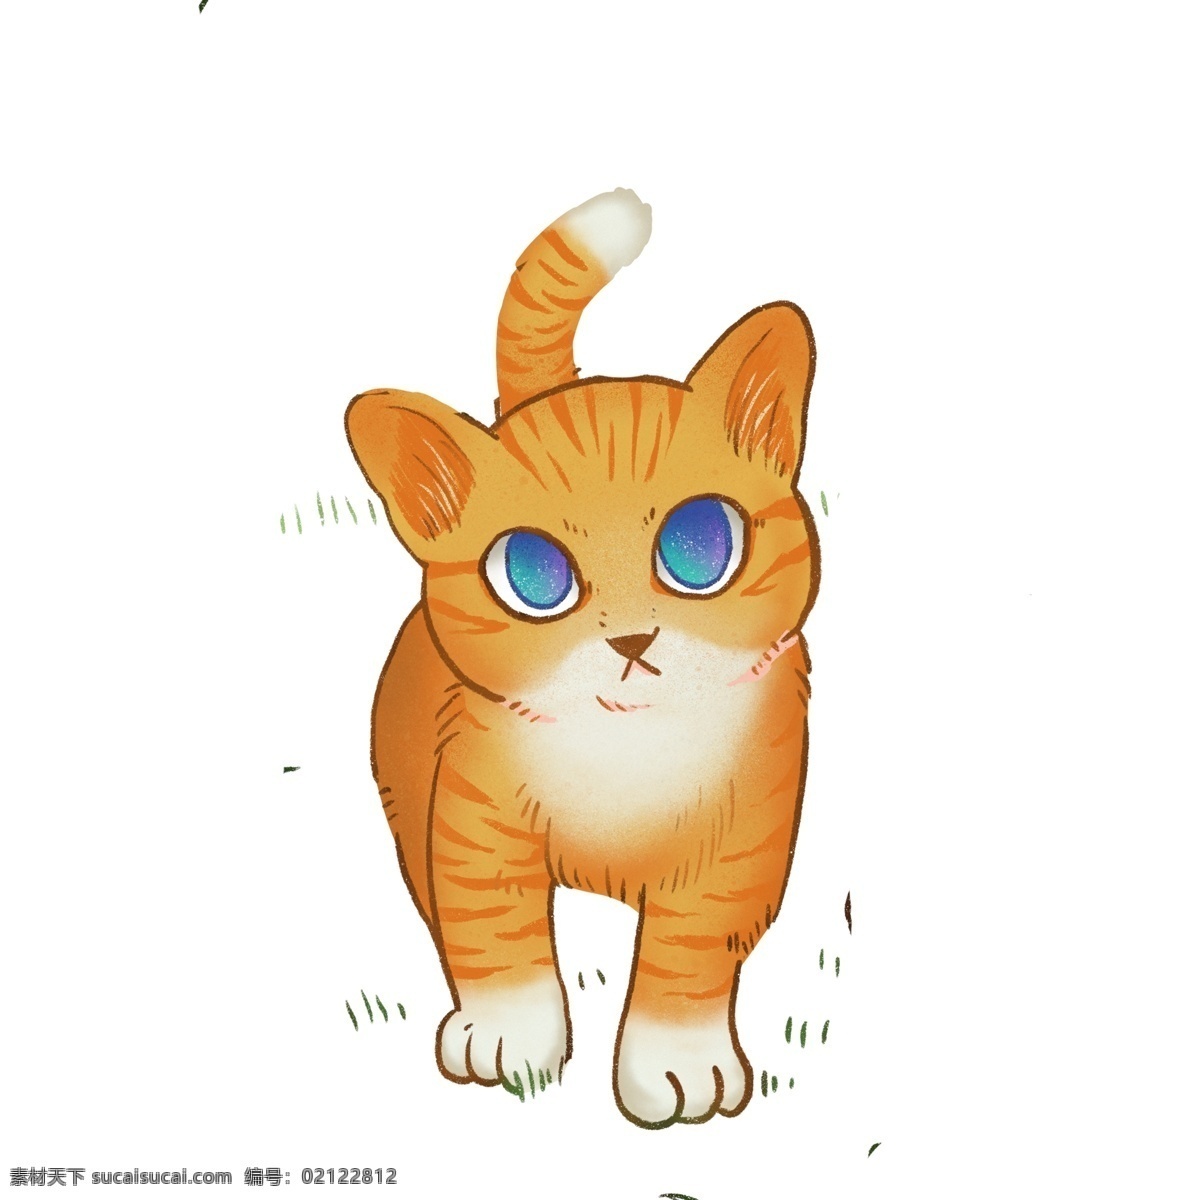 手绘 治愈 系 萌 宠 猫咪 插画 彩绘 漫画 萌宠 动物 橘猫 小动物